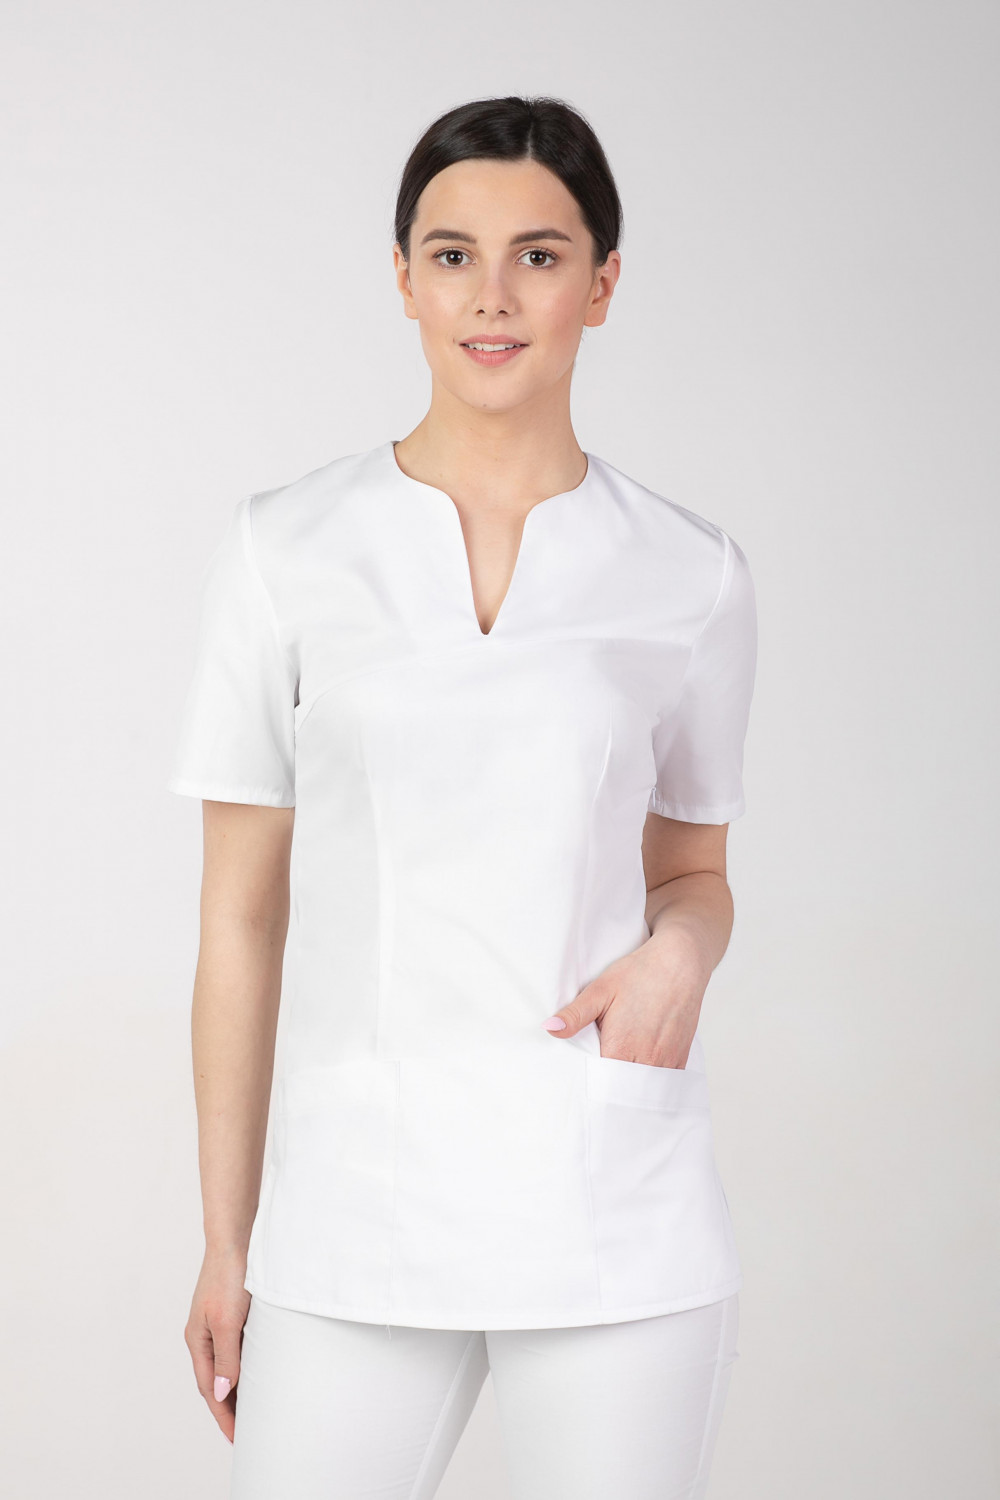 M-323X Bluza damska medyczna elastyczna kosmetyczna kolor czarny